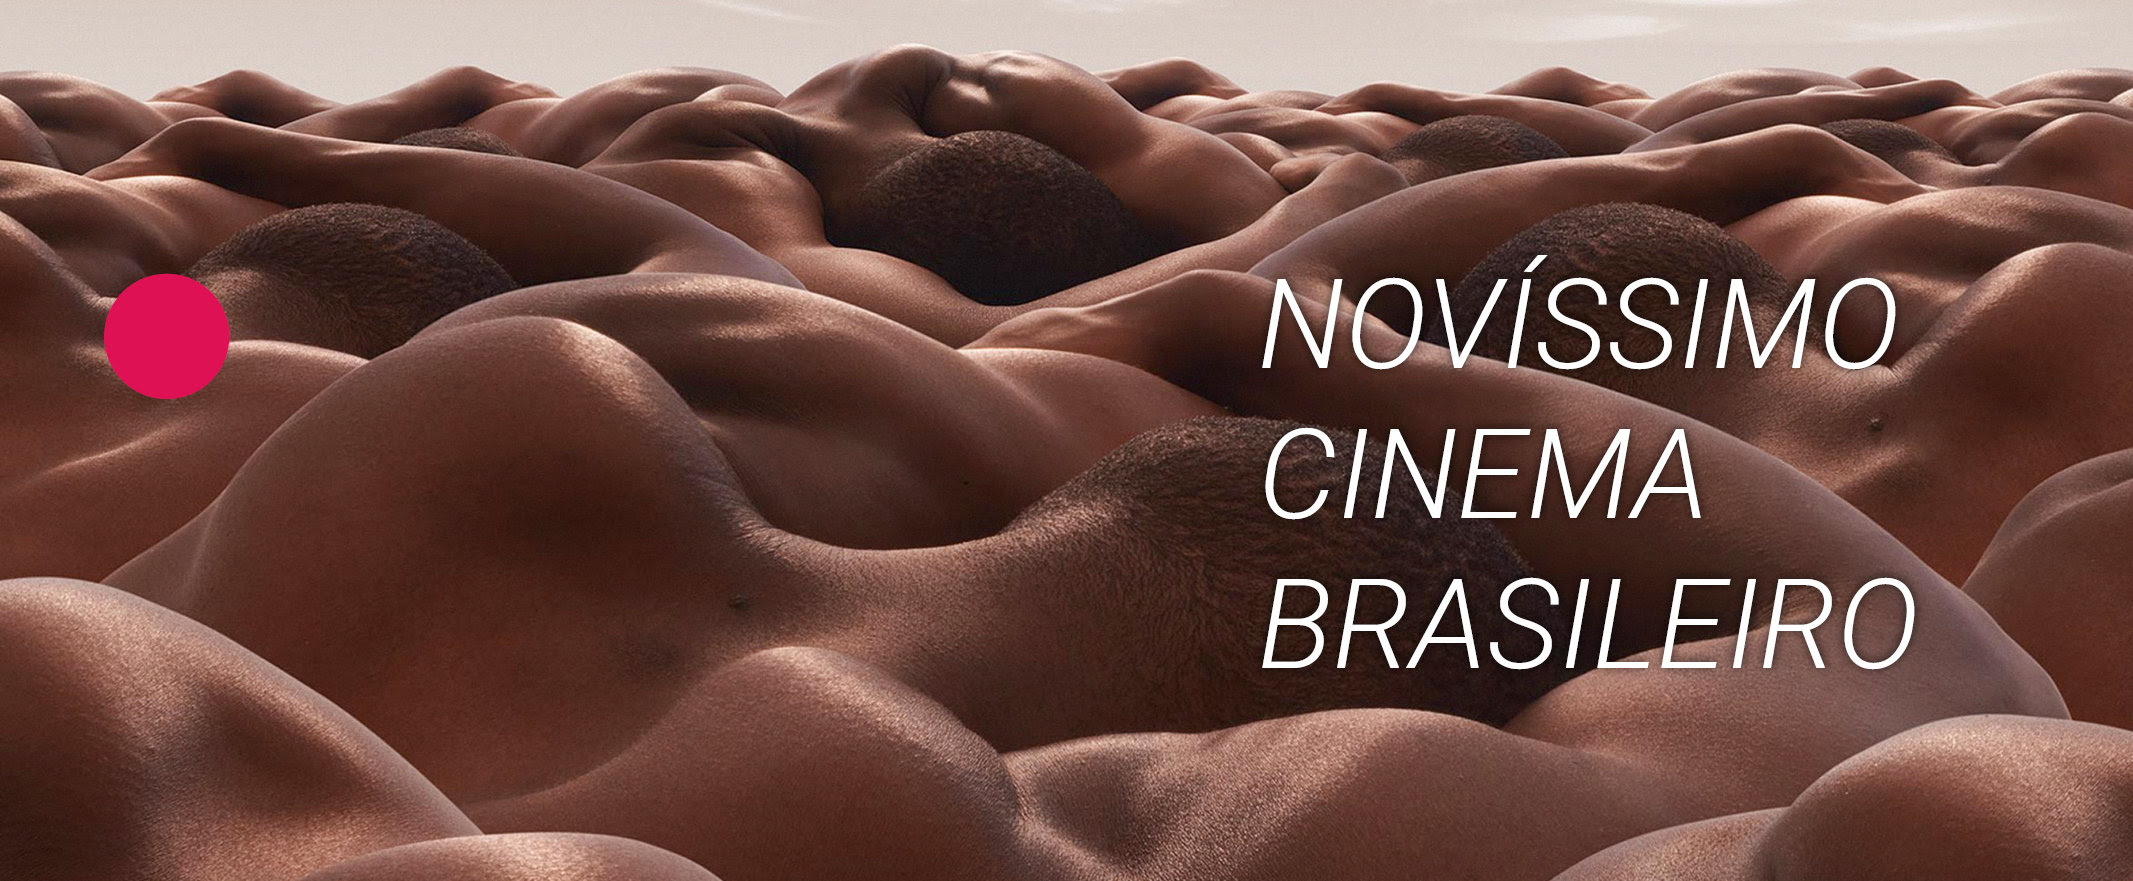 (Português) CINUSP abre mostra Novíssimo Cinema Brasileiro